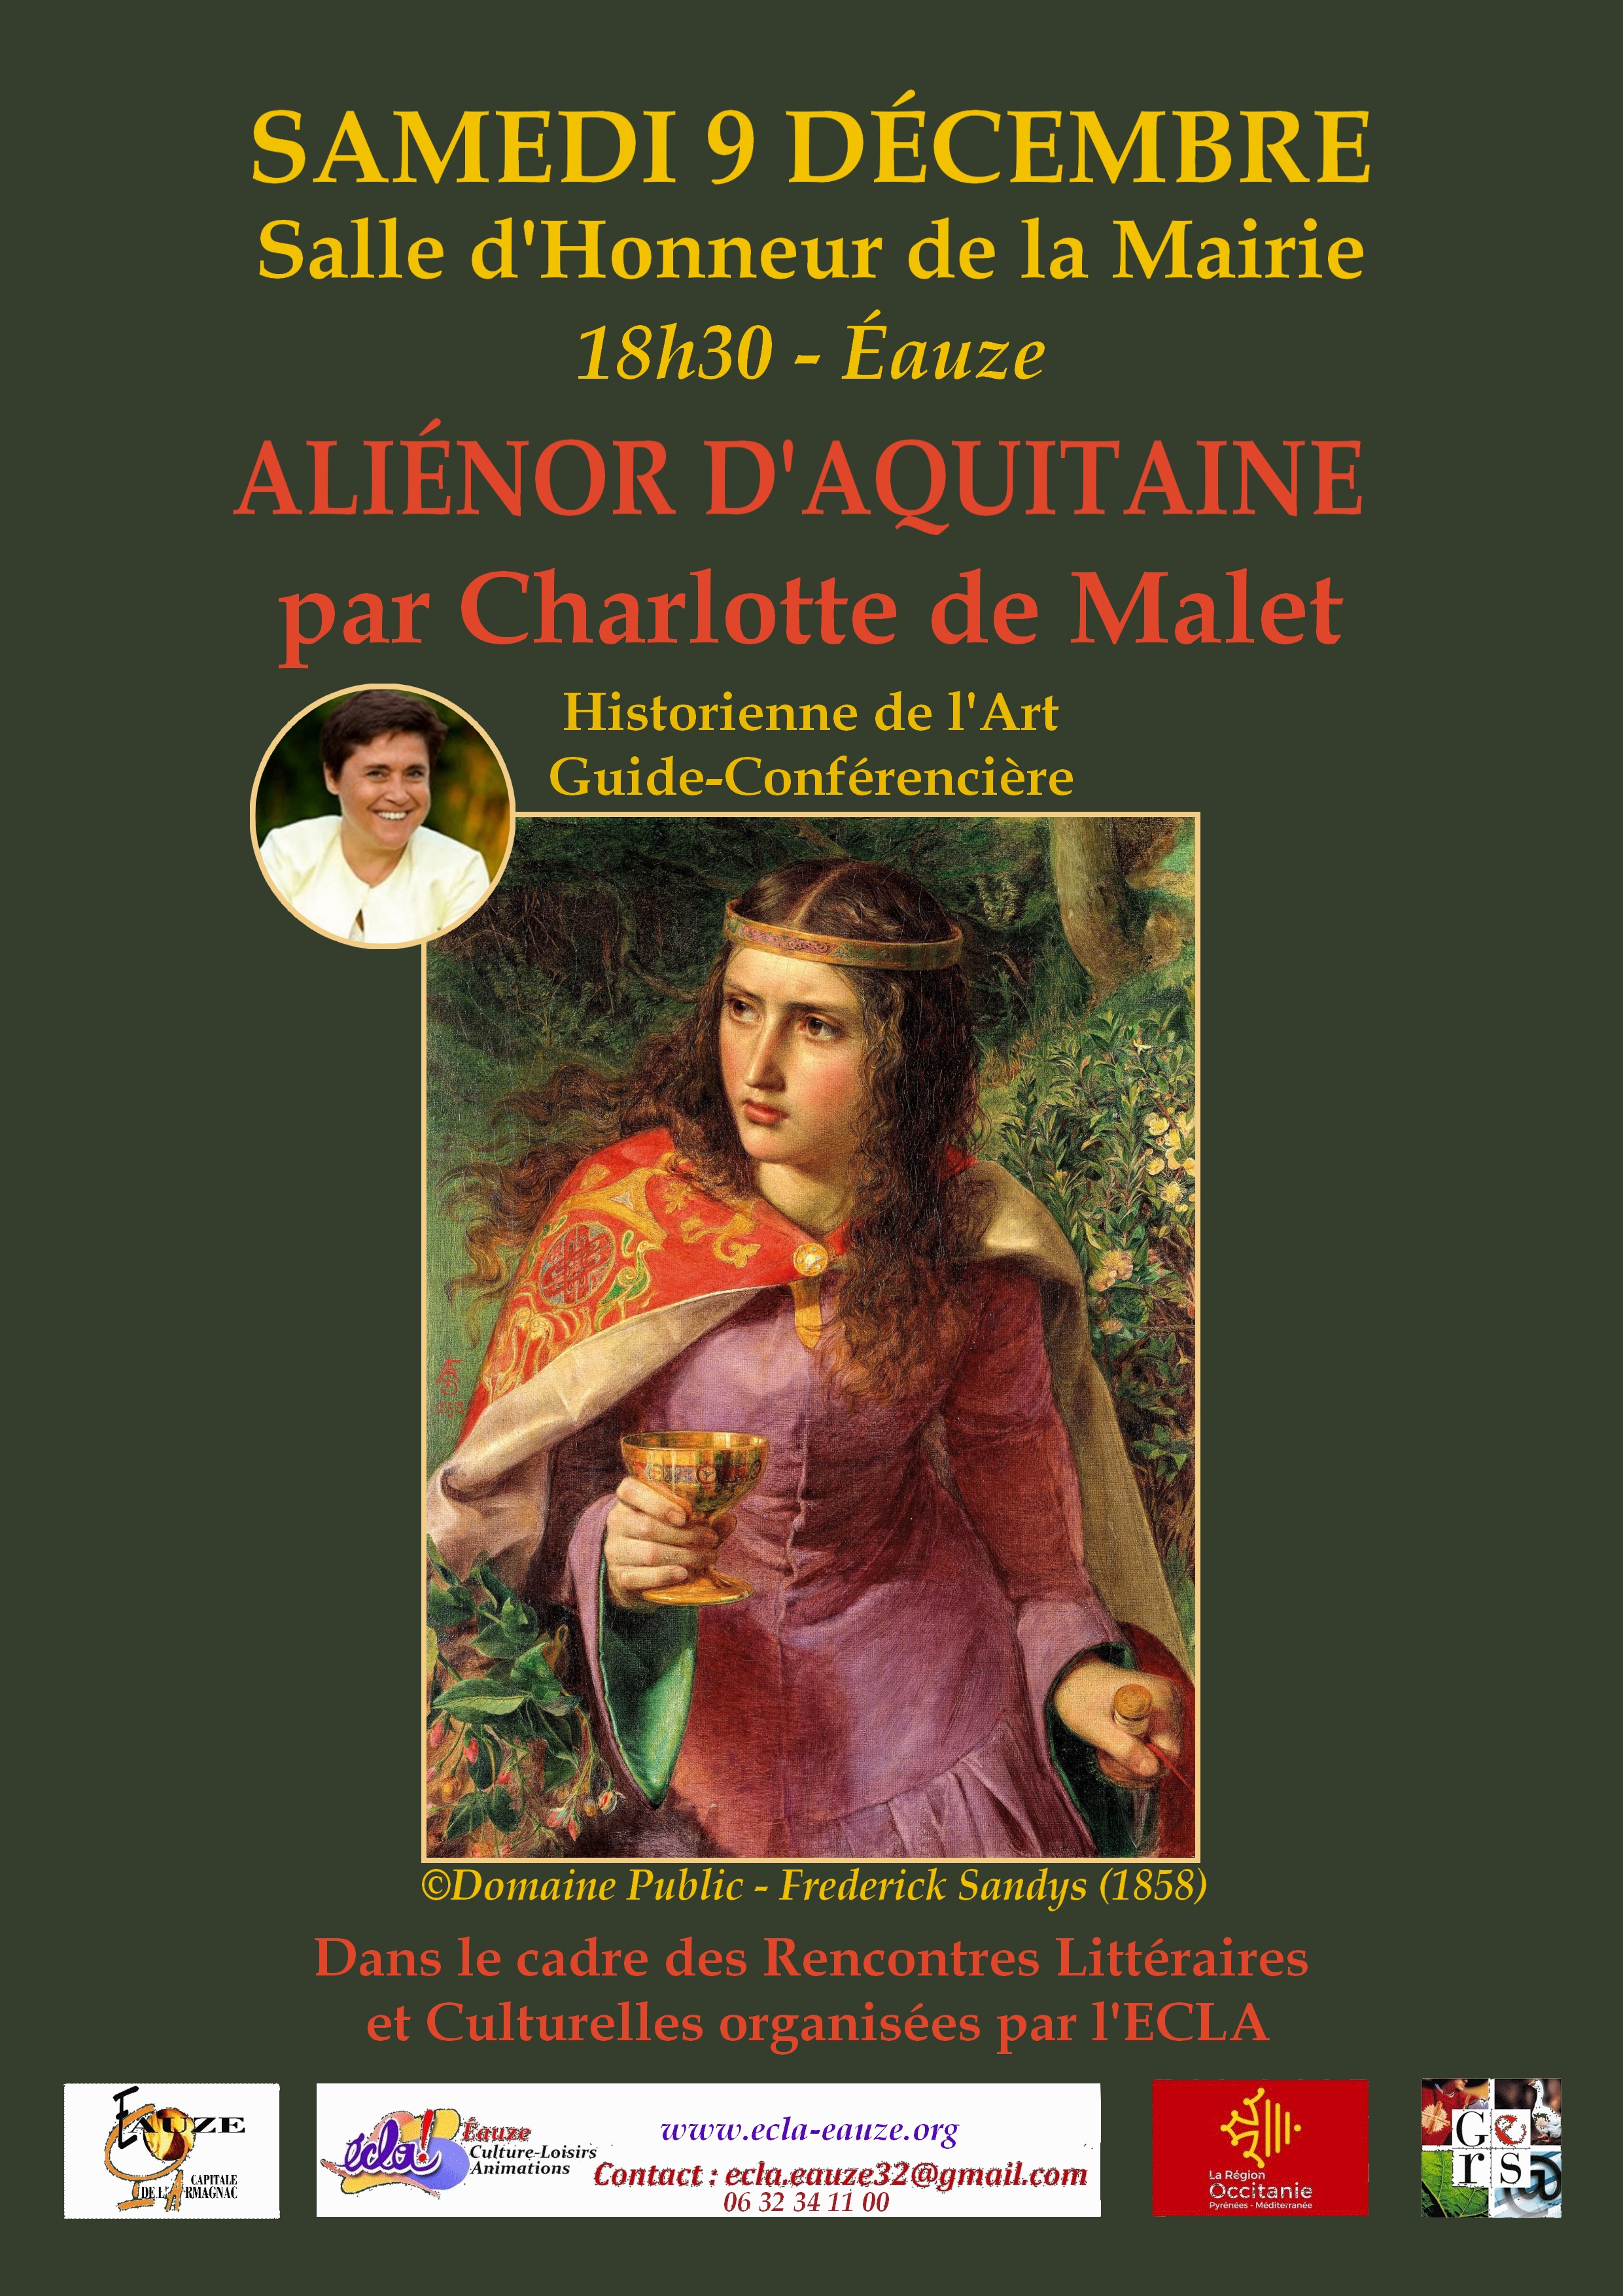 Aliénor d’Aquitaine par Charlotte de Malet